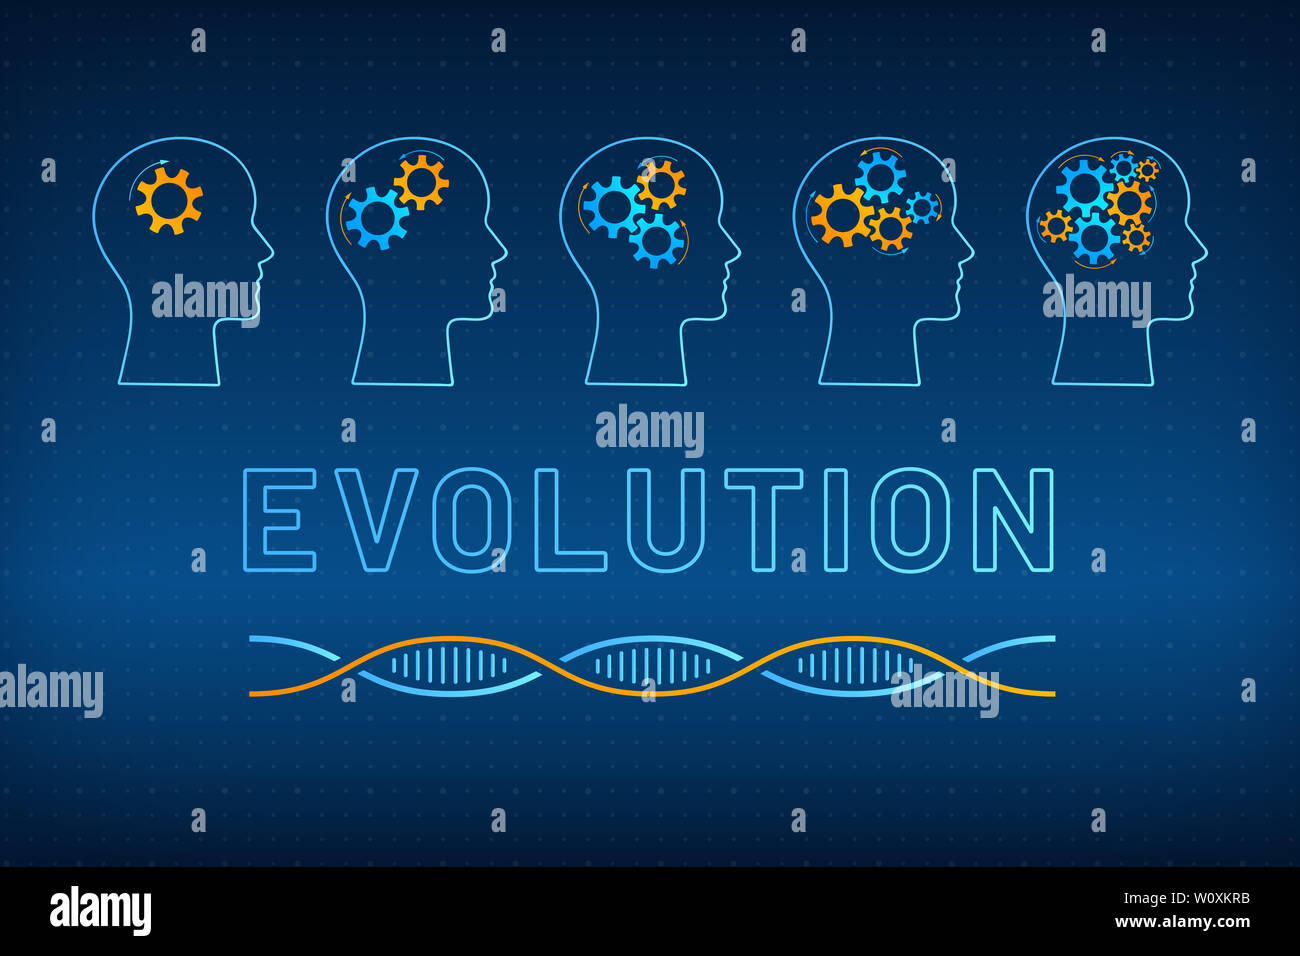 Kopf Silhouette mit Zahnrad Brain Evolution Konzept Abbildung. Gesicht Profil mit sich entwickelnden Getriebe Gehirn, blau, orange DNA-Molekül Helix und großes Schild Evolution auf der tech Hintergrund Stockfoto